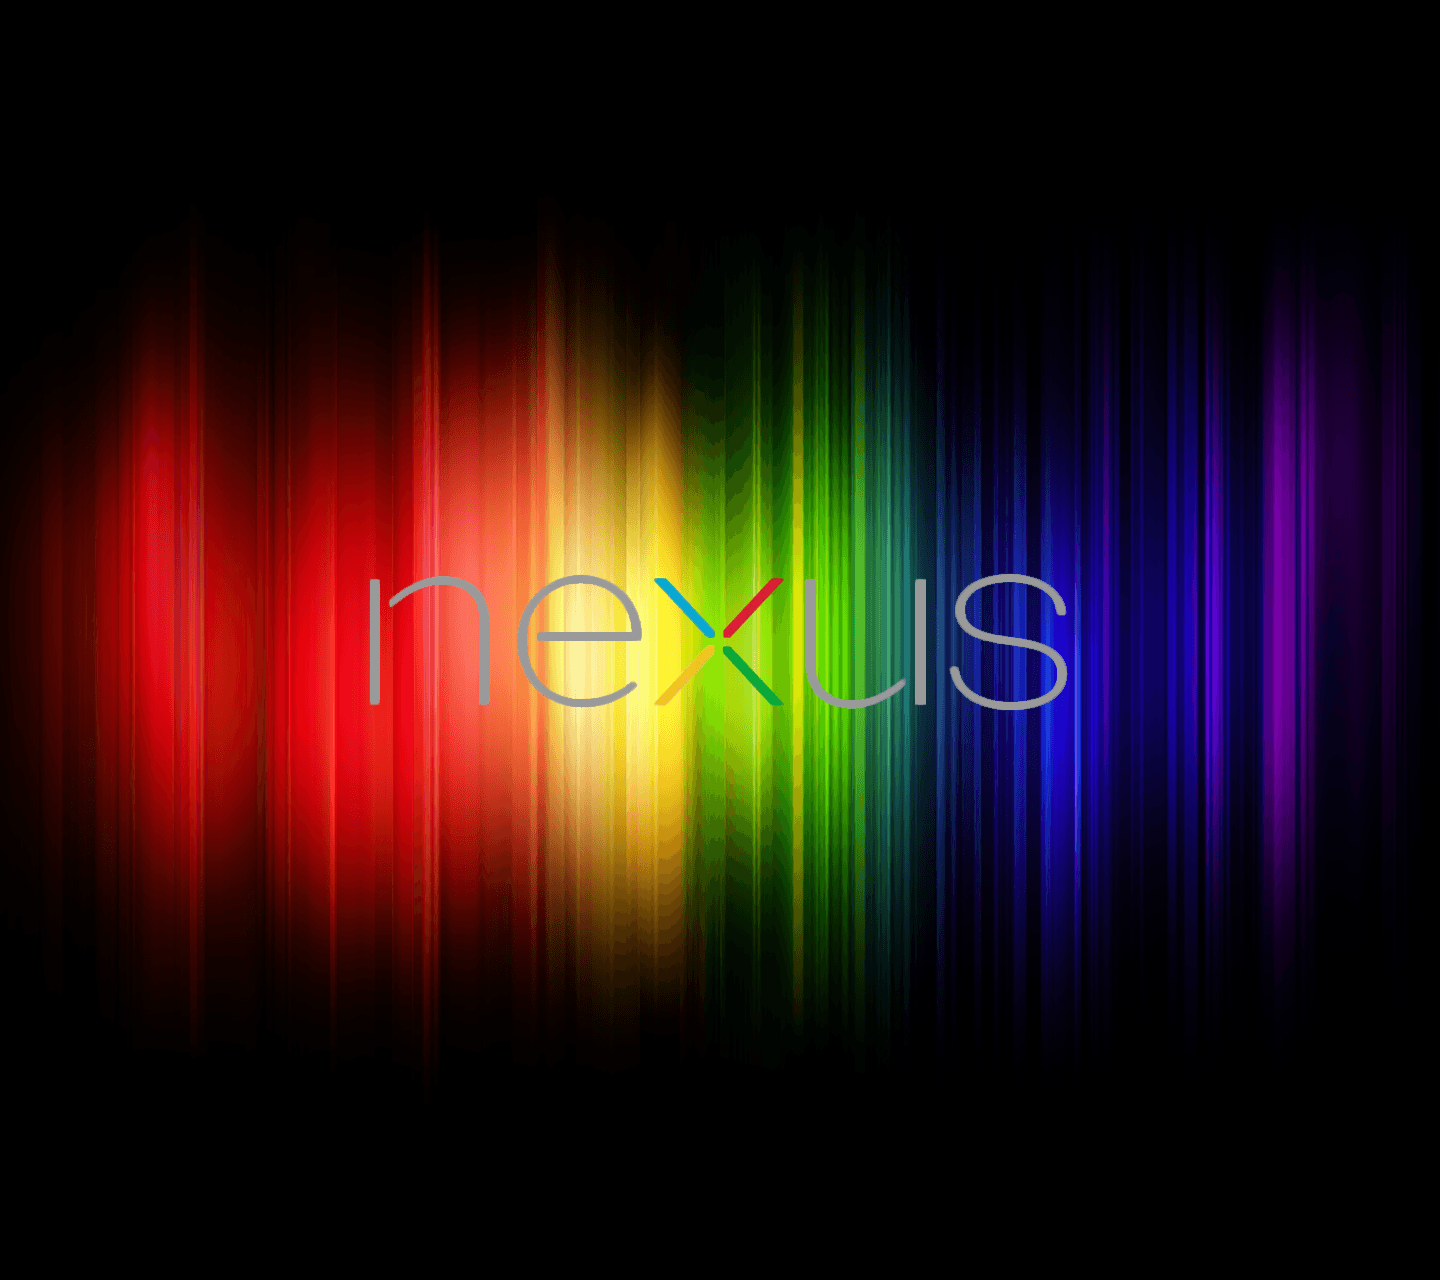 Wallpaper Icon Set Ideas For A "Nexus" Theme?